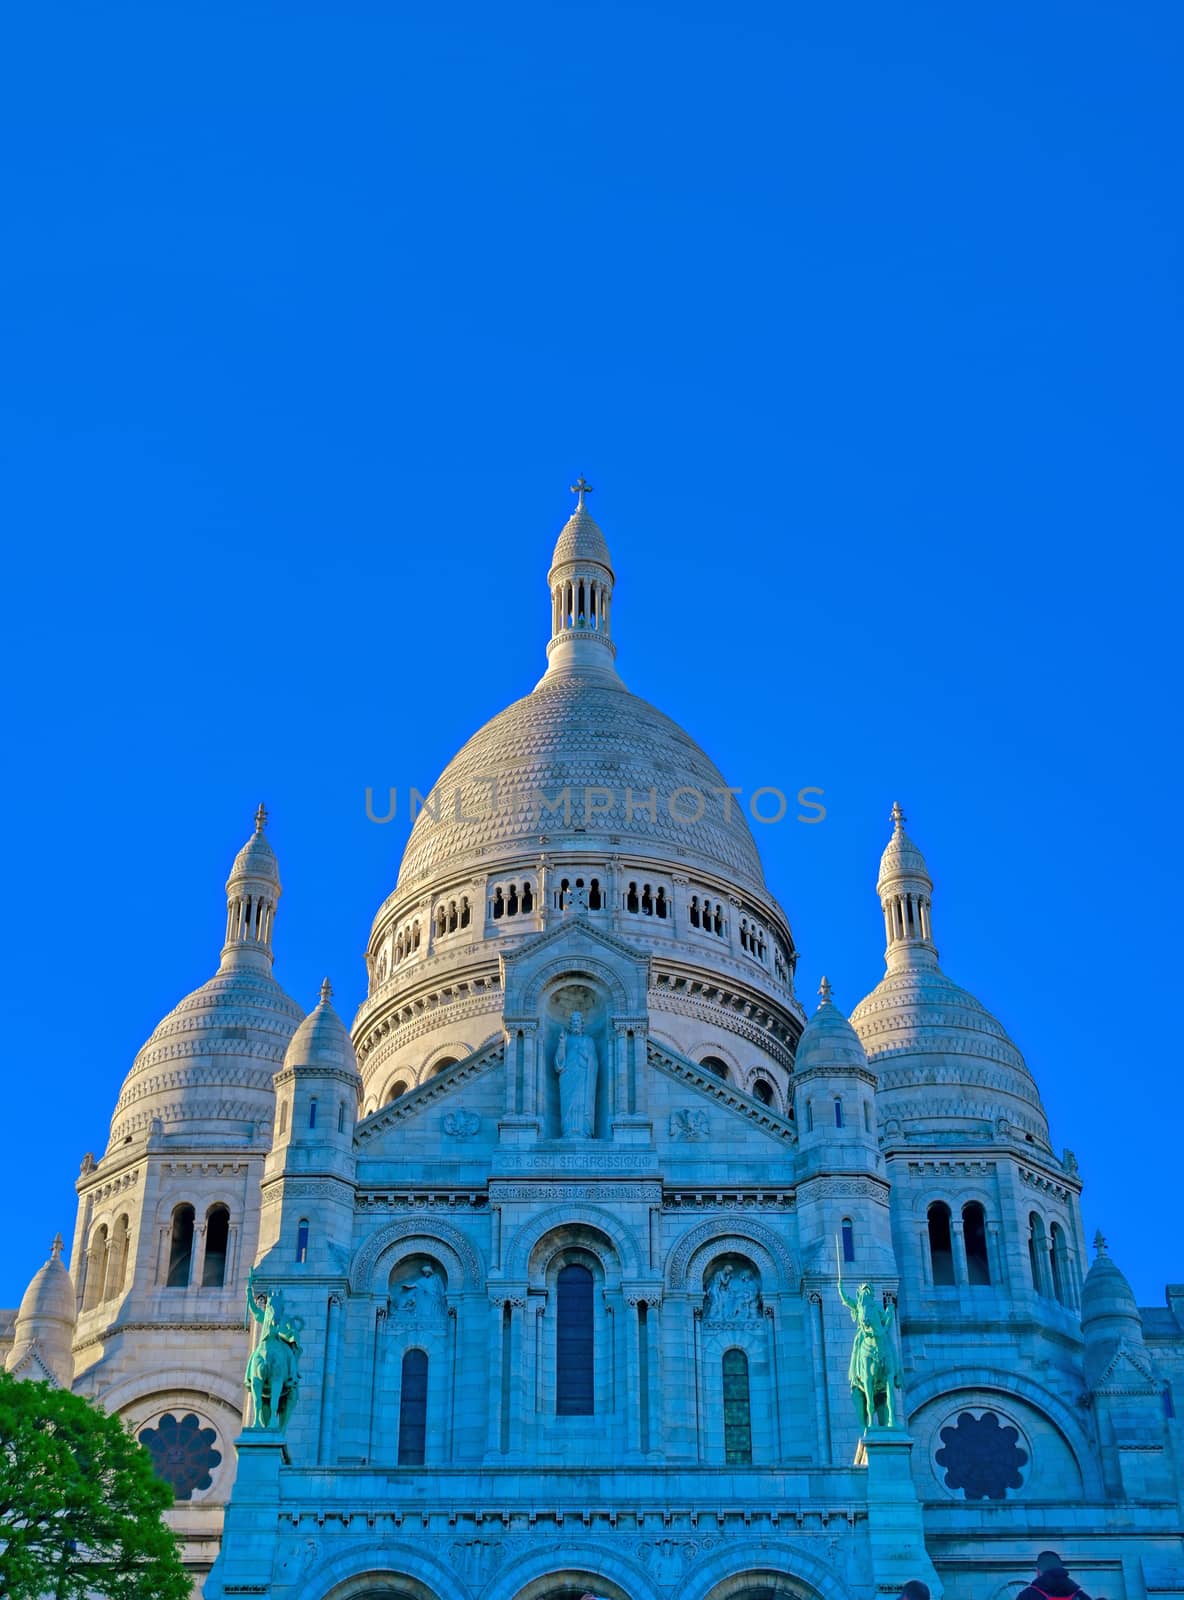 Sacre Coeur in paris, France by jbyard22